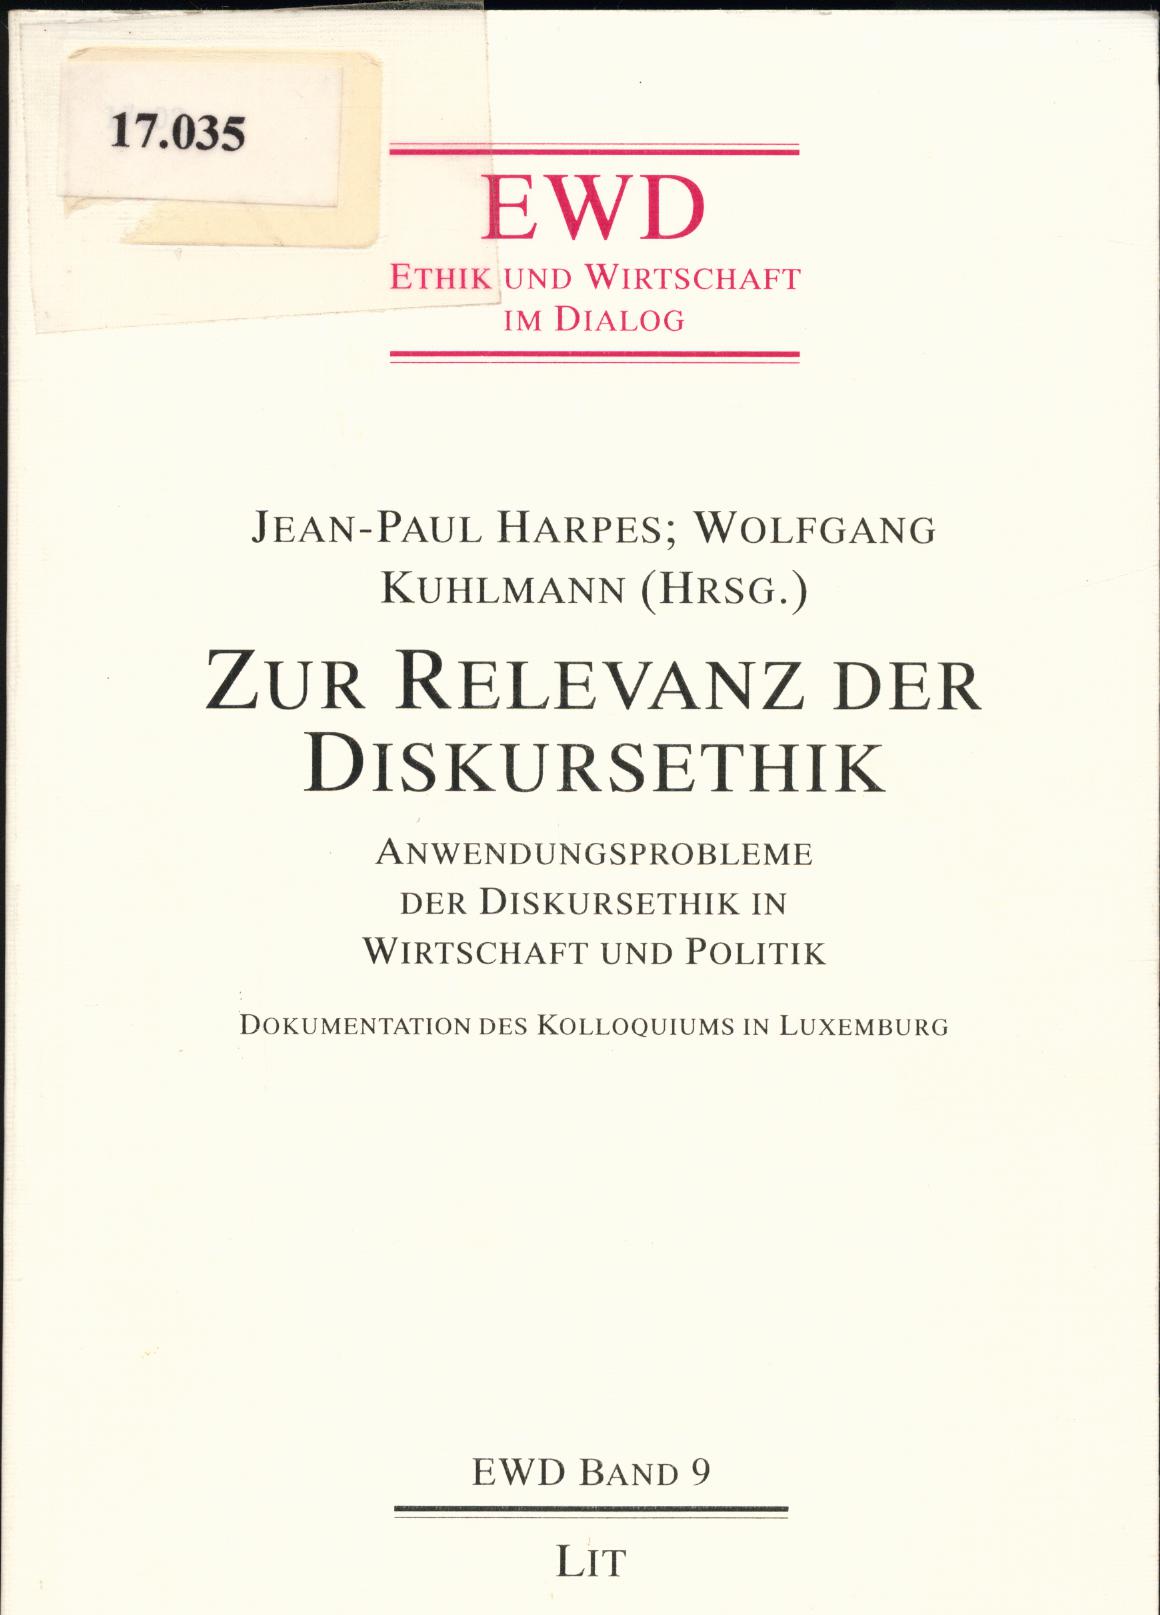 Zur Relevanz der Diskursethik Anwendungsprobleme der Diskursethik in Politik und Wirtschaft - Harpes, Jean-Paul und Wolfgang Kuhlmann